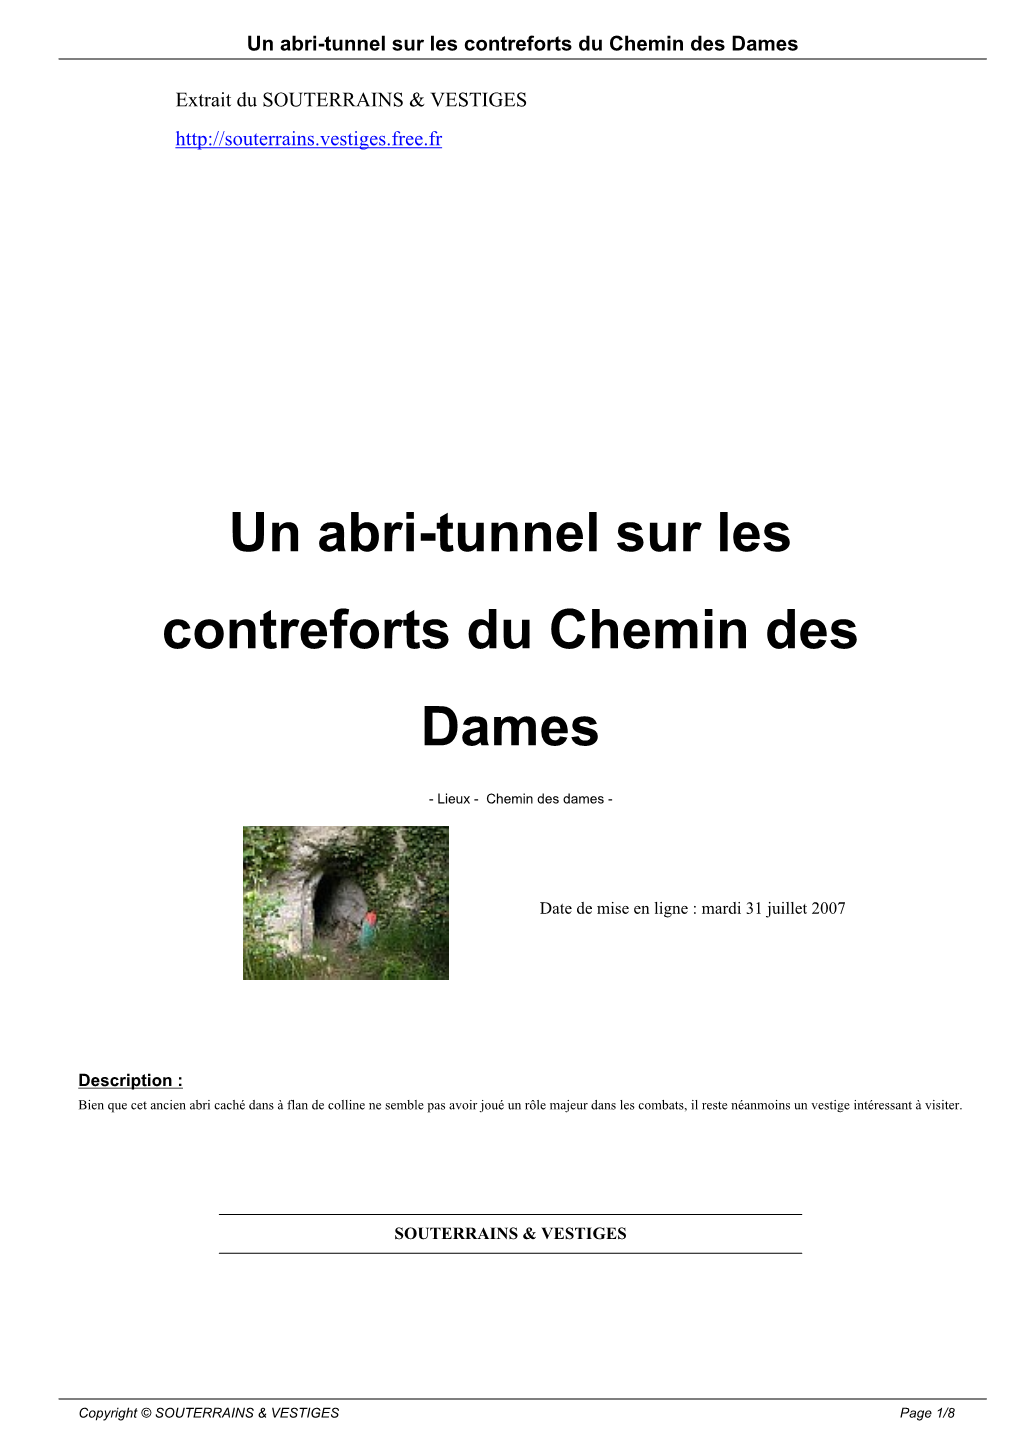 Un Abri-Tunnel Sur Les Contreforts Du Chemin Des Dames